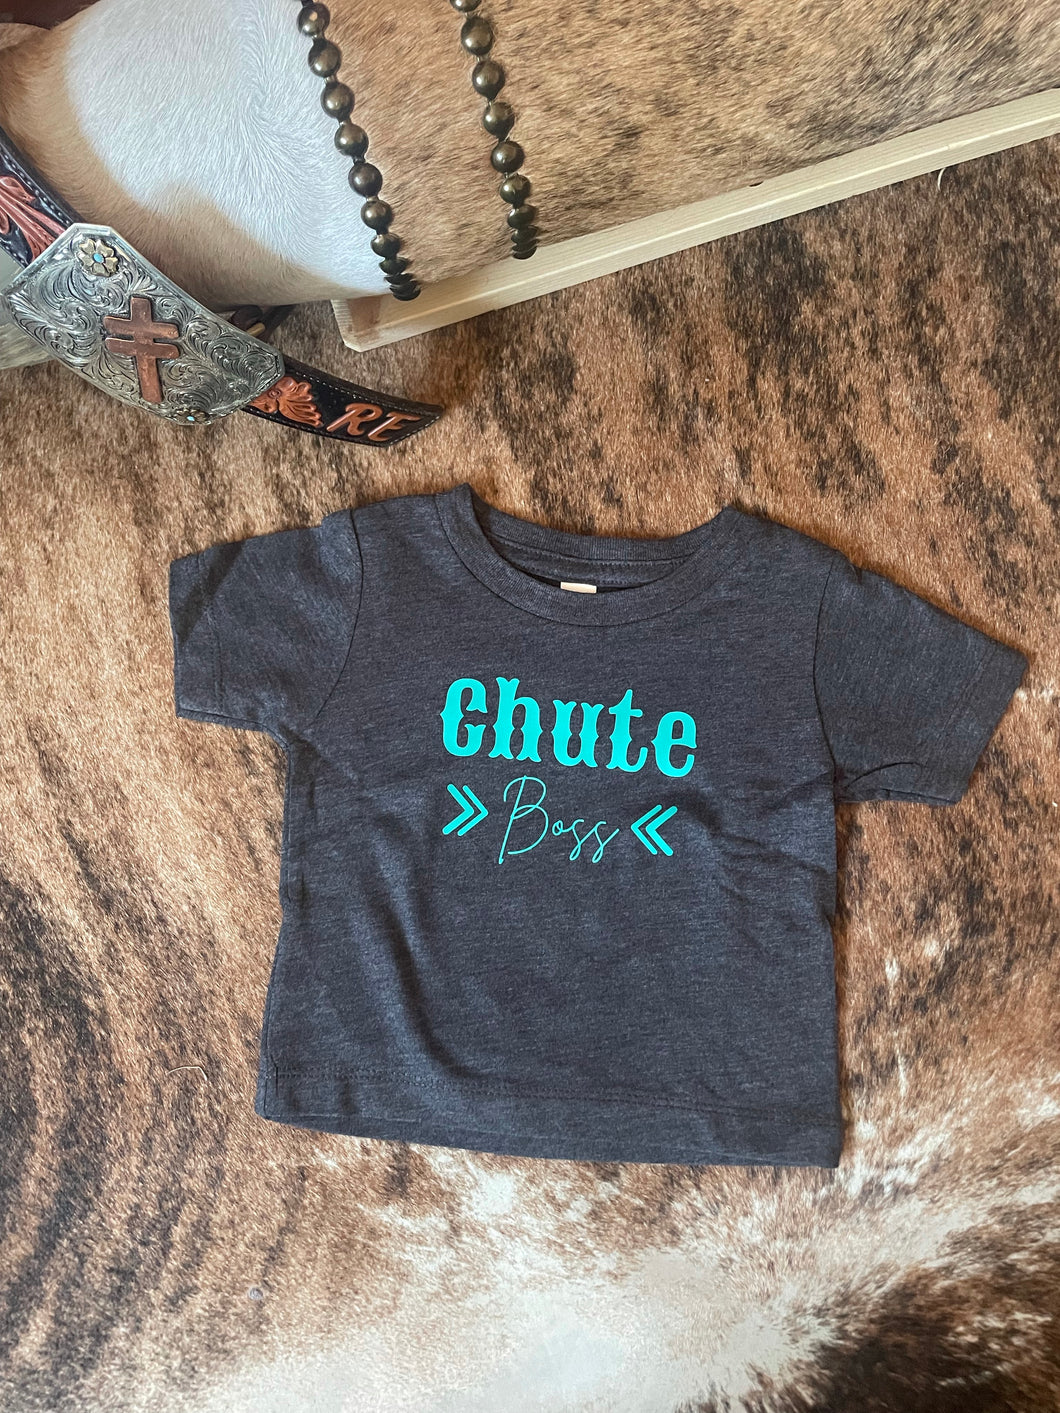 STW Girl's Infant Chute Boss T-Shirt